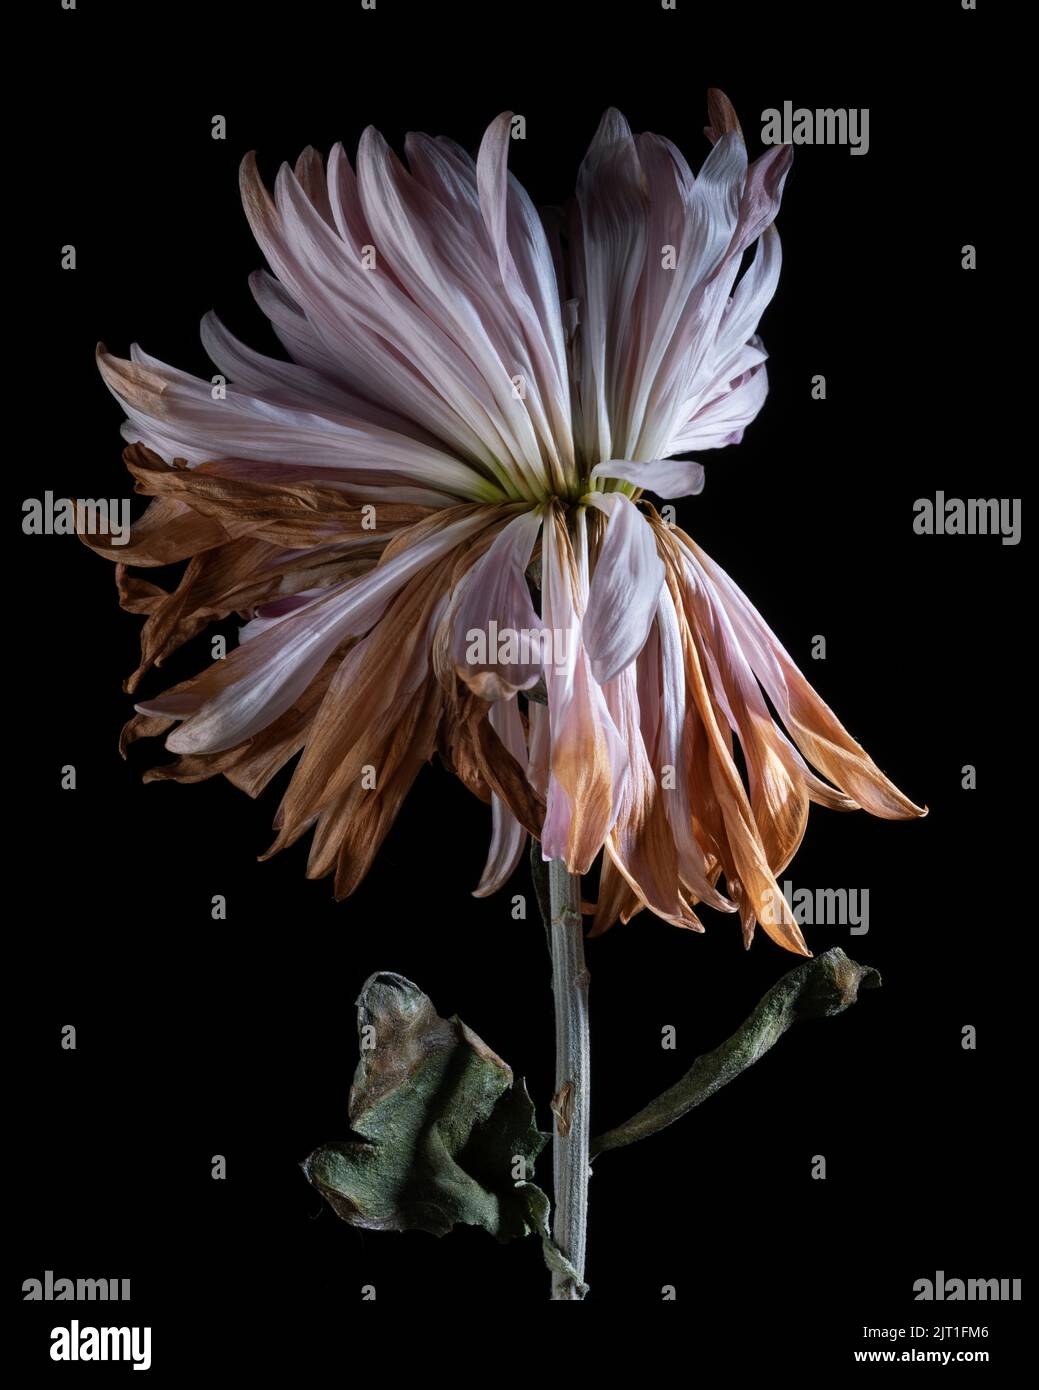 Retrato de la flor del crisantemo rosado - parte 2, la flor marchita y marchita Foto de stock